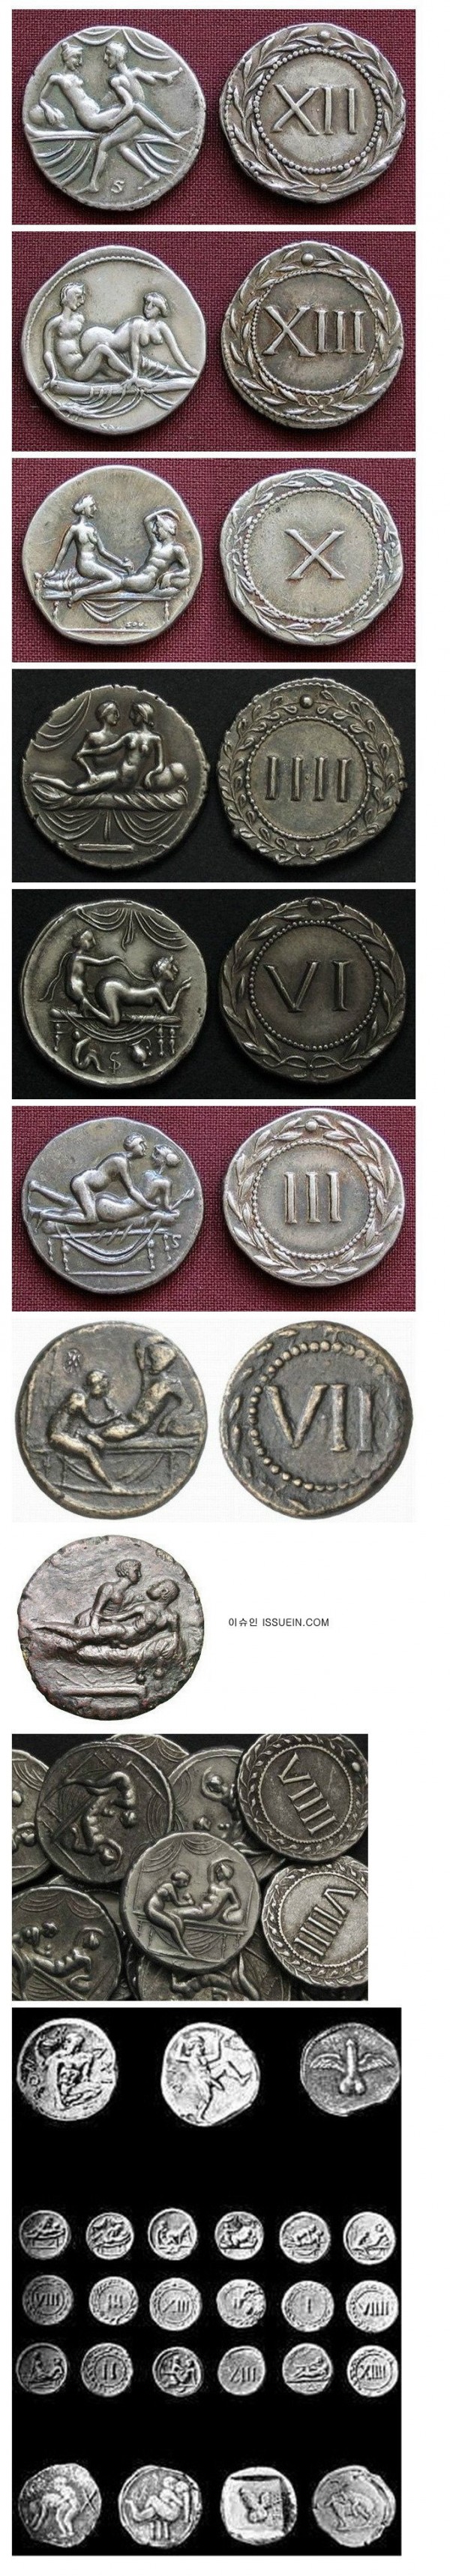 로마시대 동전 특징